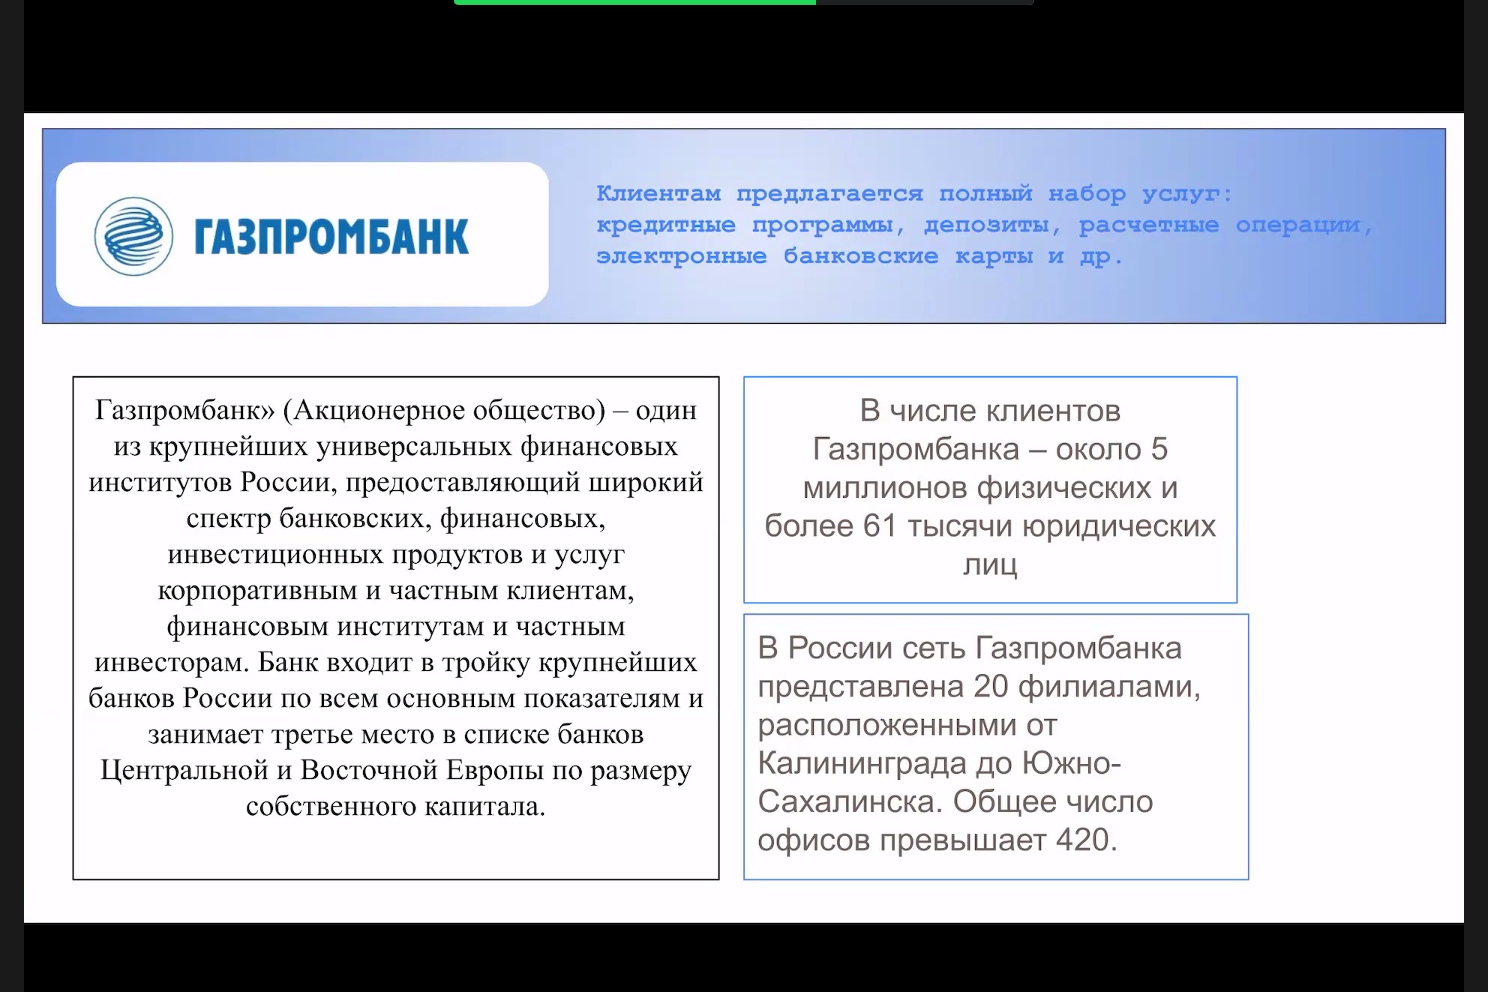 Методы управления в банковском секторе обсудили на онлайн-вебинаре в Мининском университете